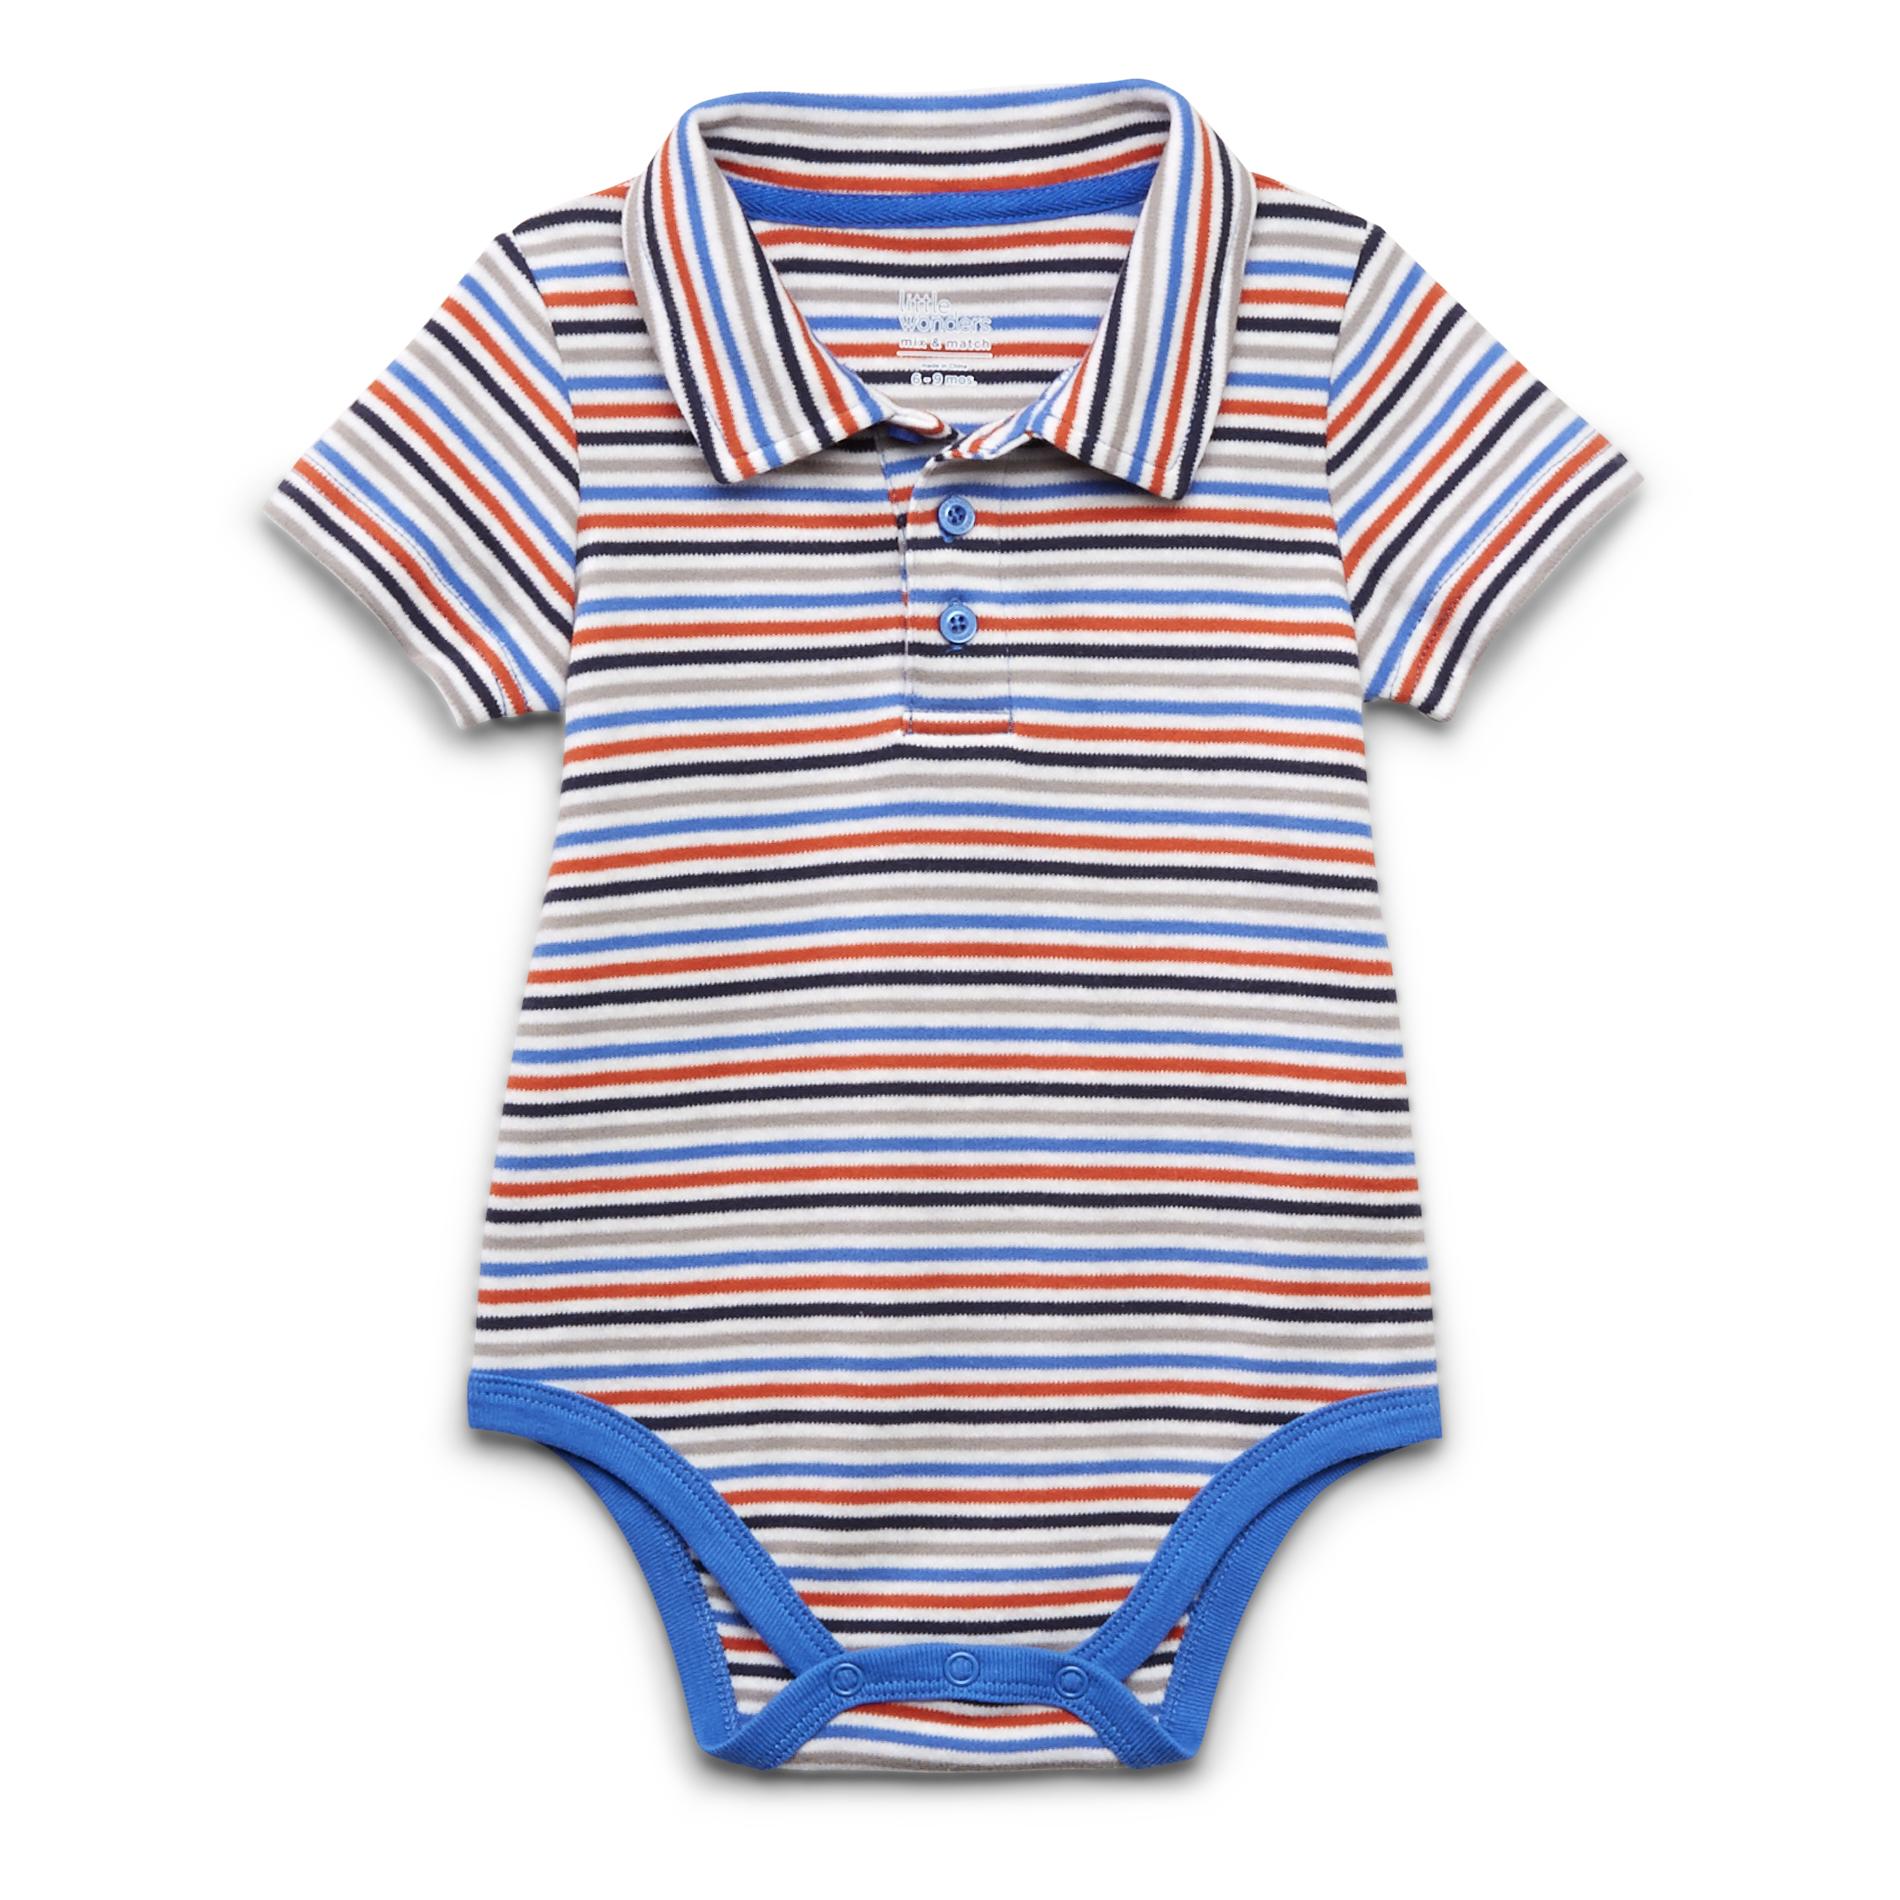 Little Wonders Newborn & Infant Boy's Polo Bodysuit - Striped